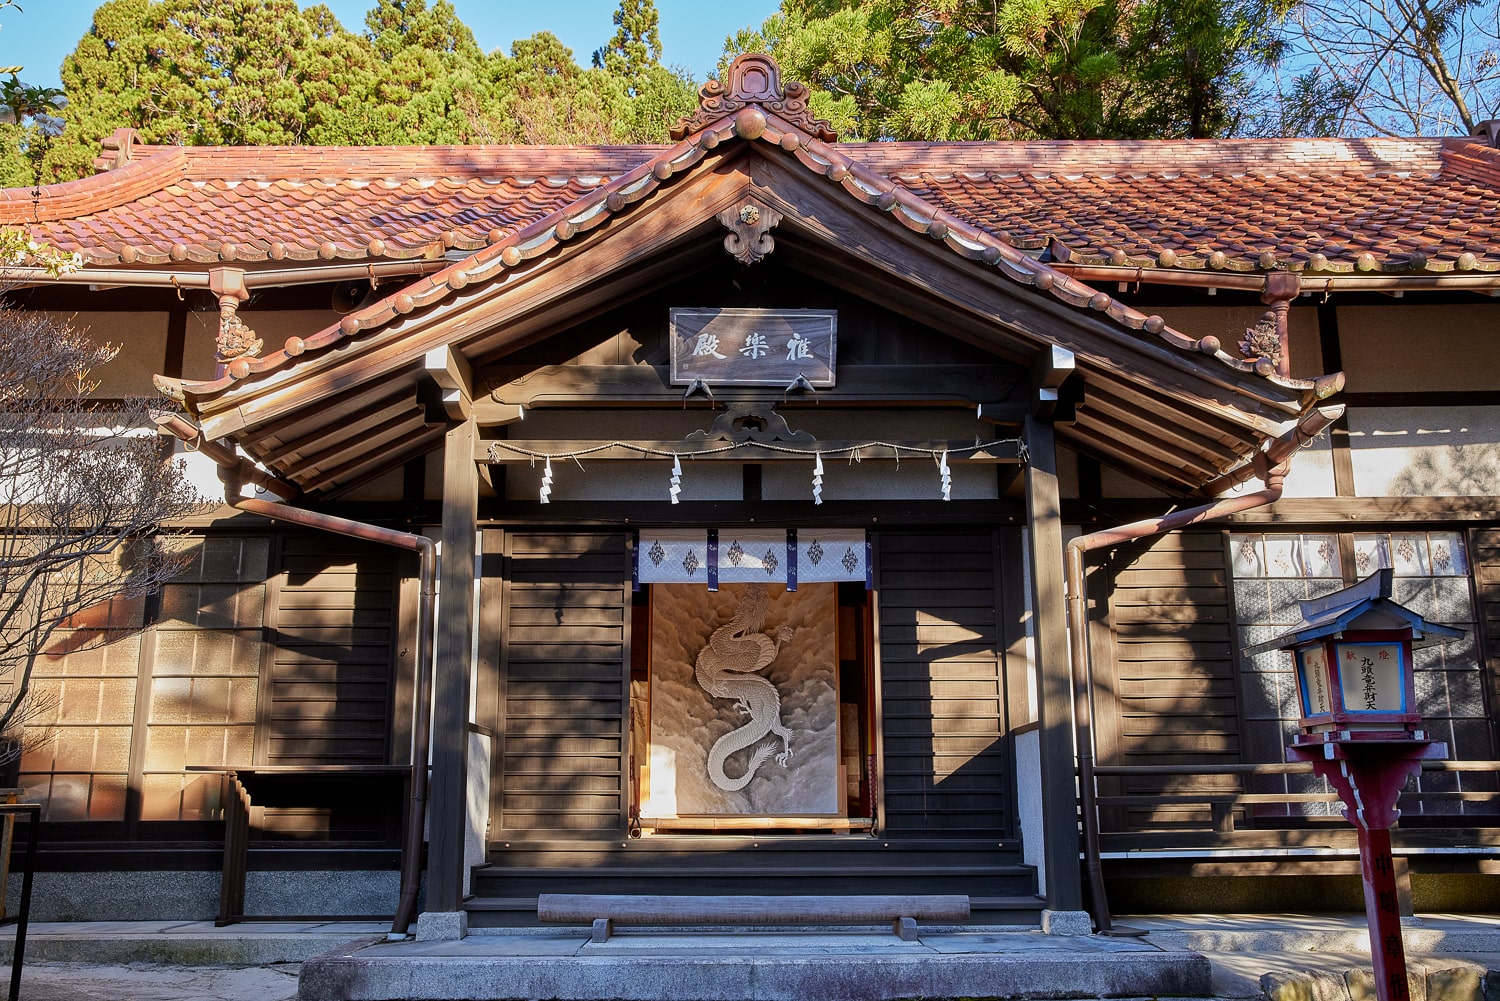 「雅楽殿」と名づけられた建物の玄関座敷には、天に上る竜を描いた日本画が鎮座する。「お千度」の順路でもあり、参拝者はここで拝礼。